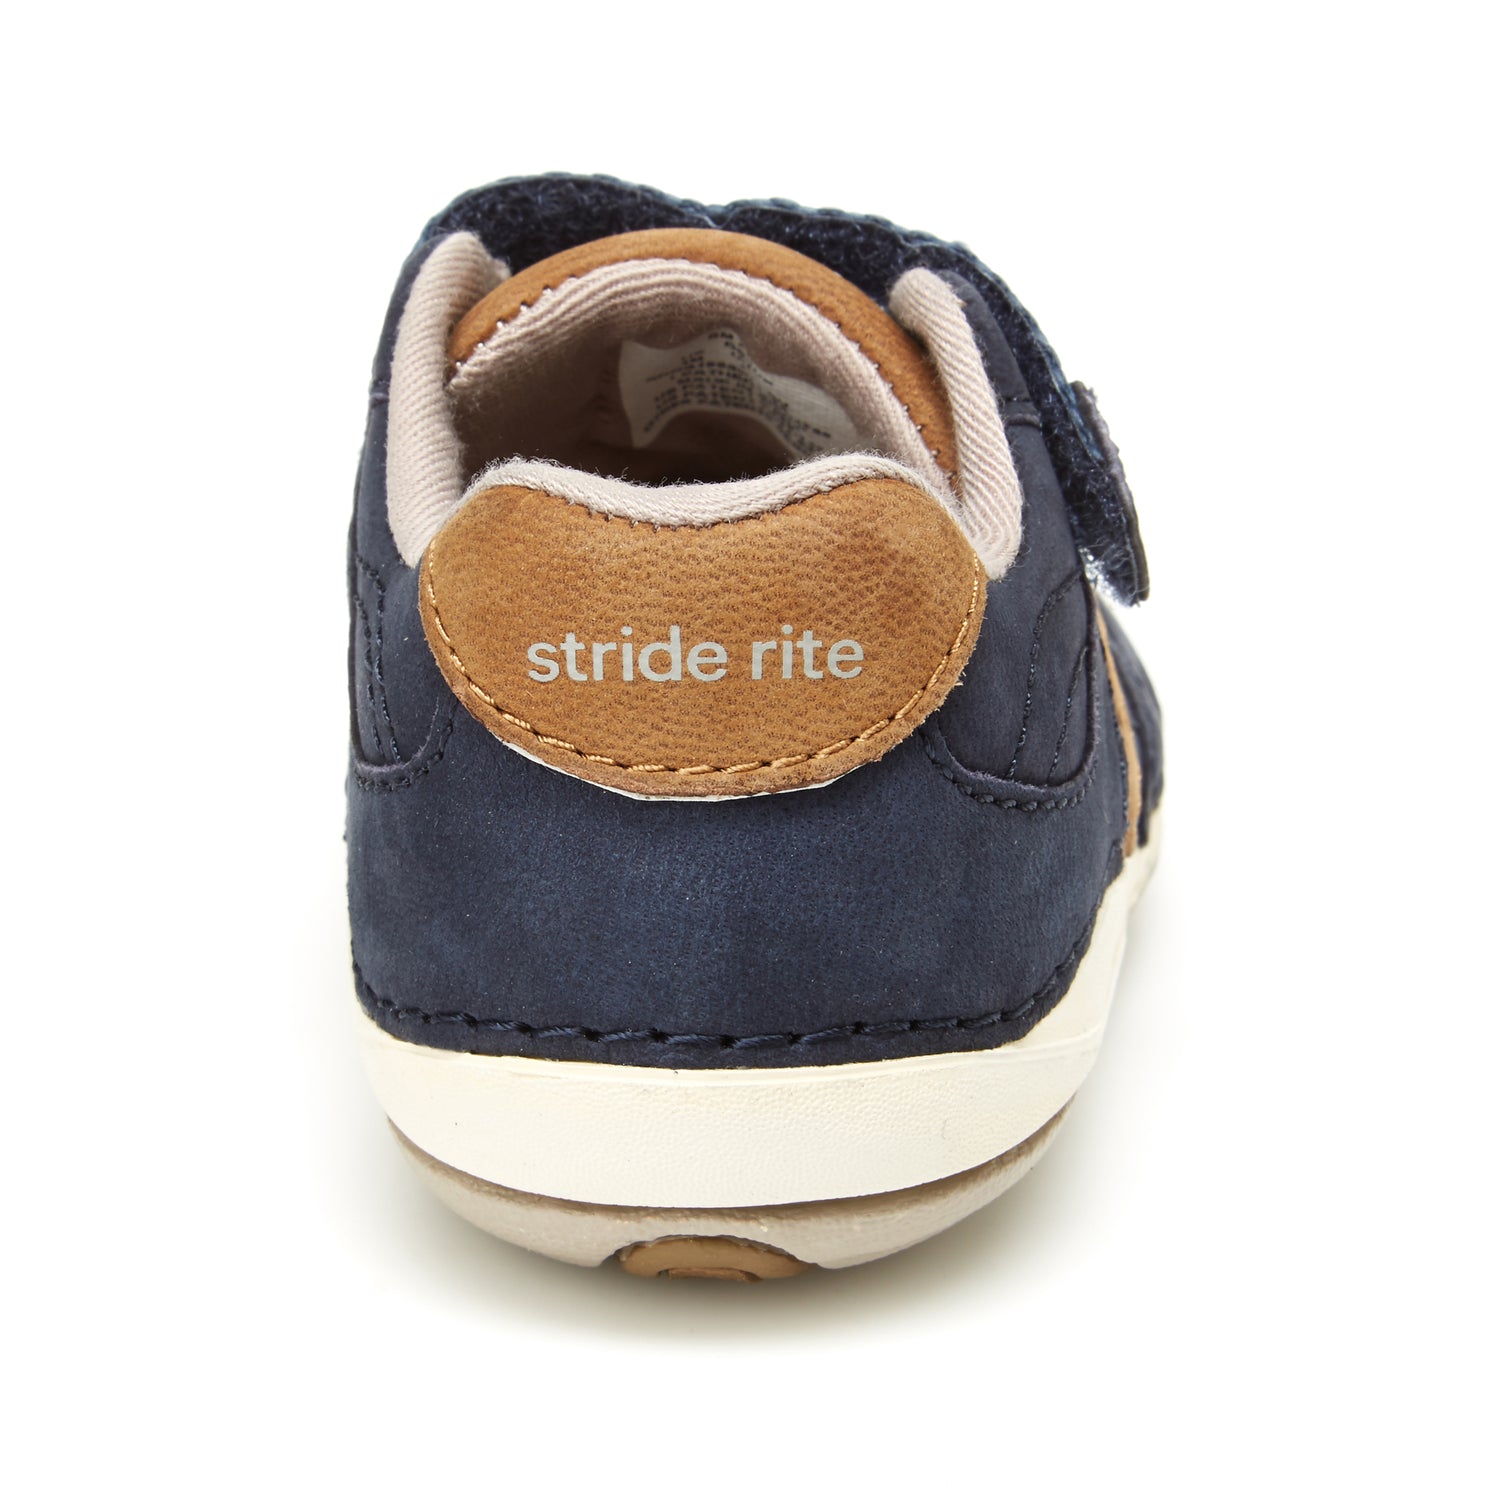 Artie Shoe